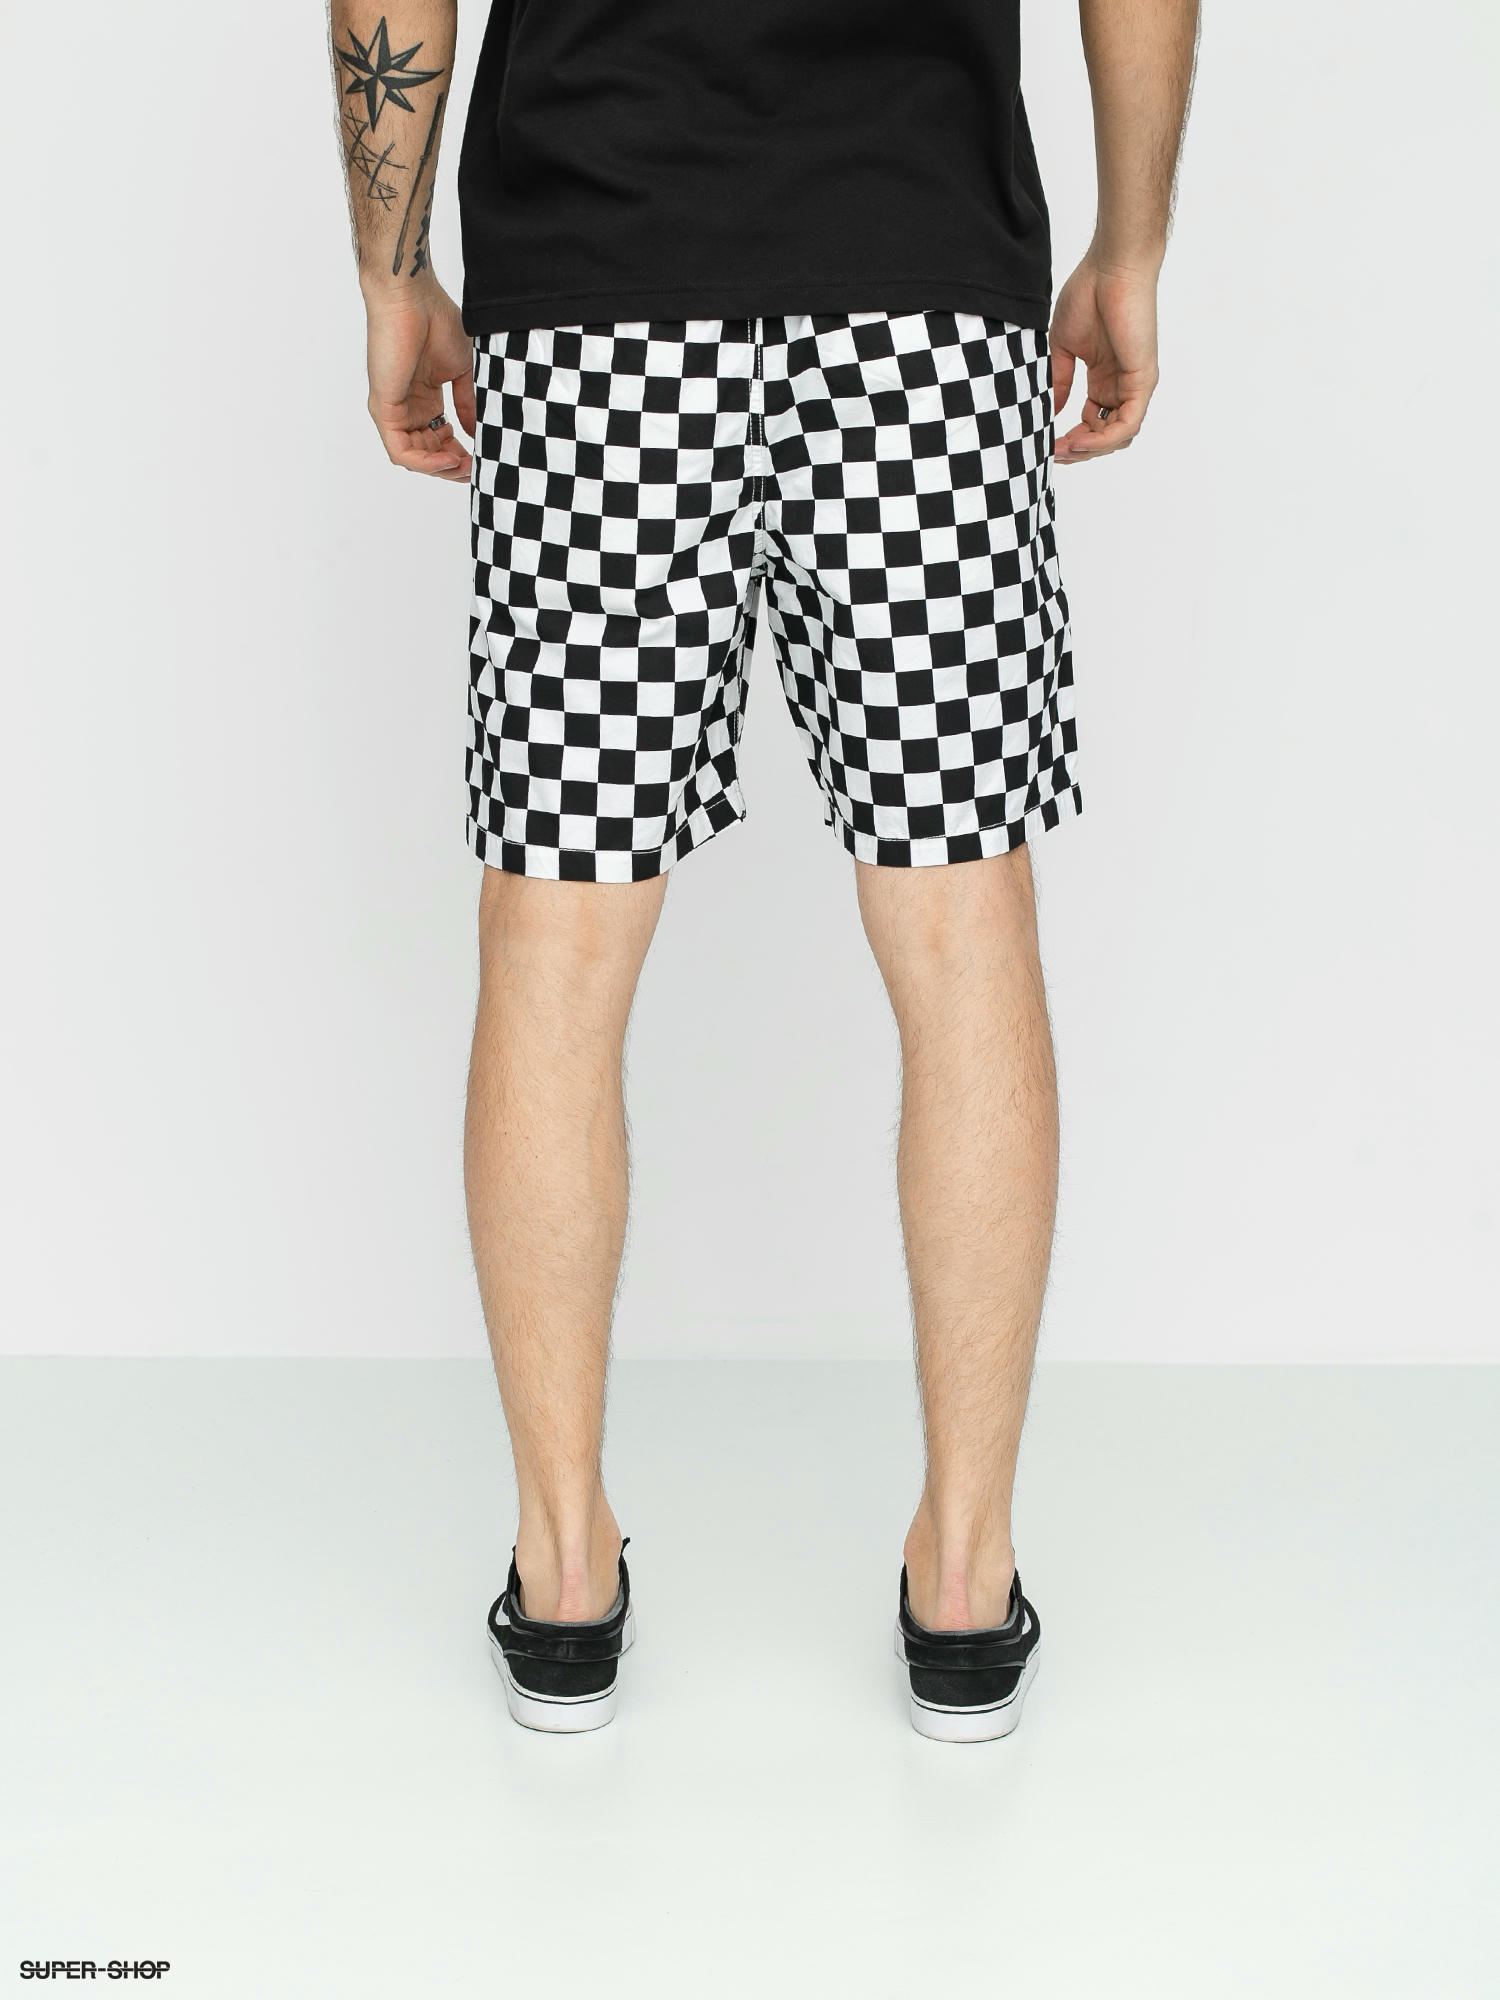 van checkerboard shorts